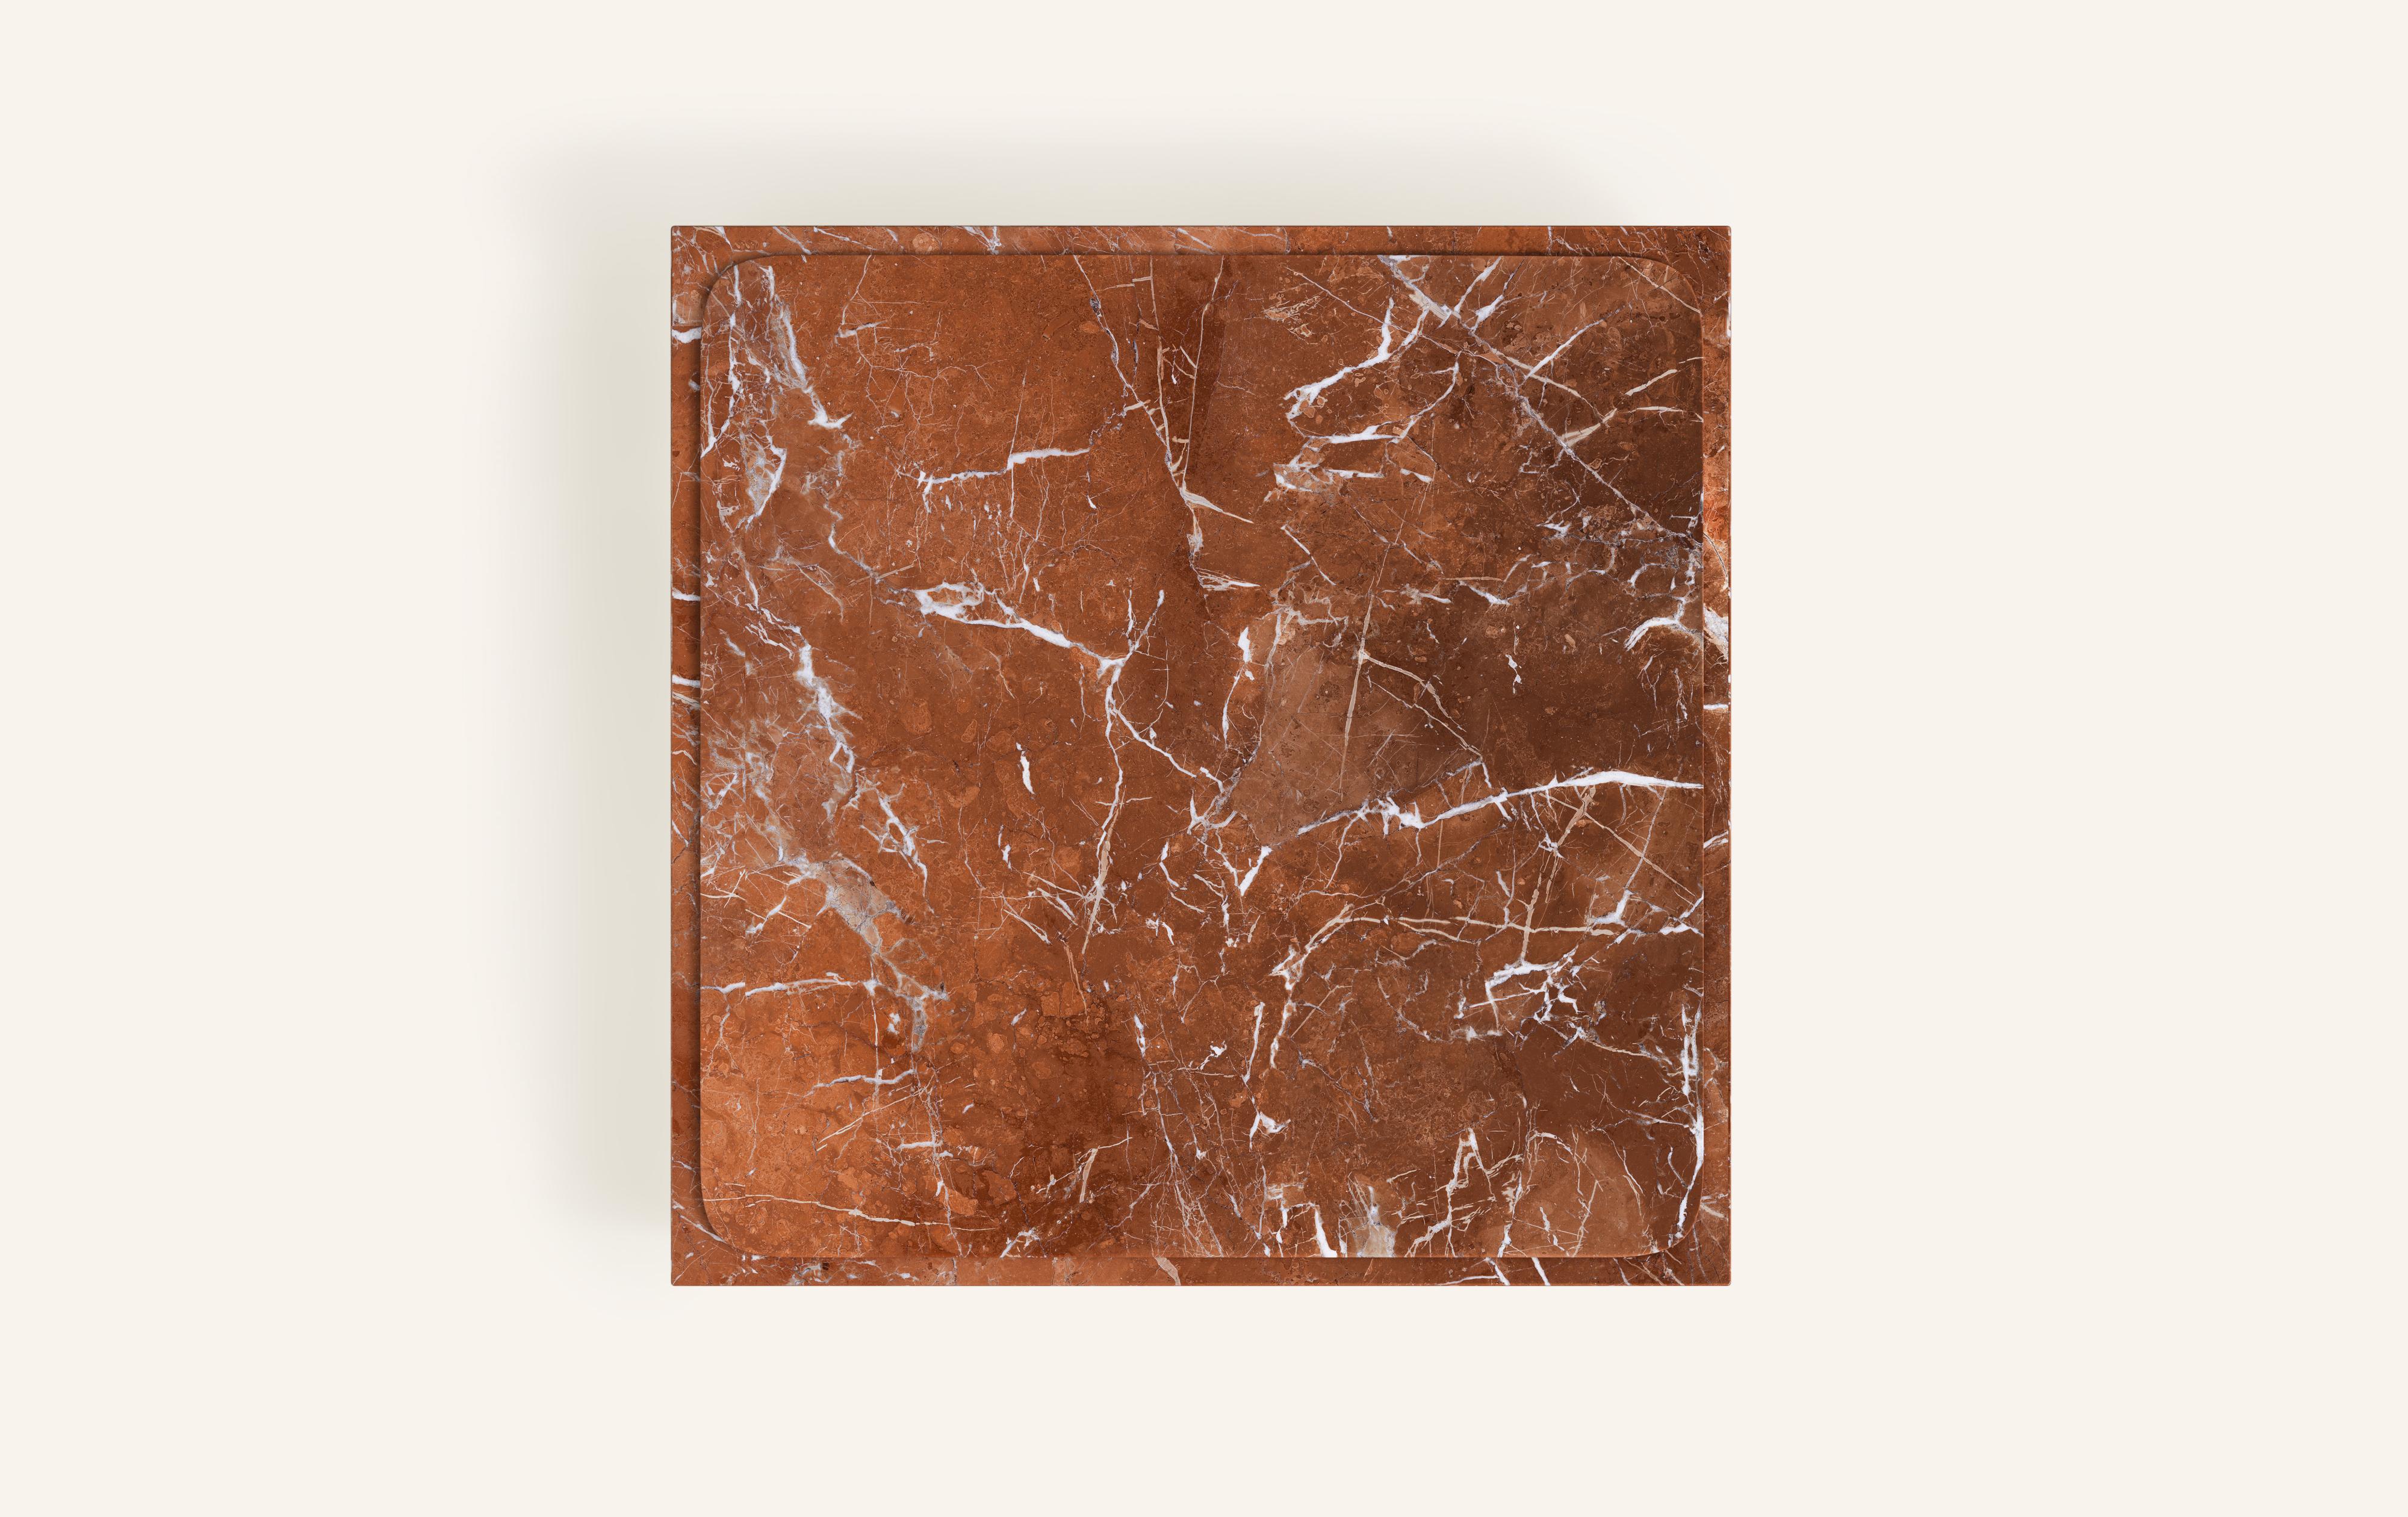 American FORM(LA) Cubo Square Plinth Coffee Table 60”L x 60”W x 13”H Rojo Alicante Marble For Sale